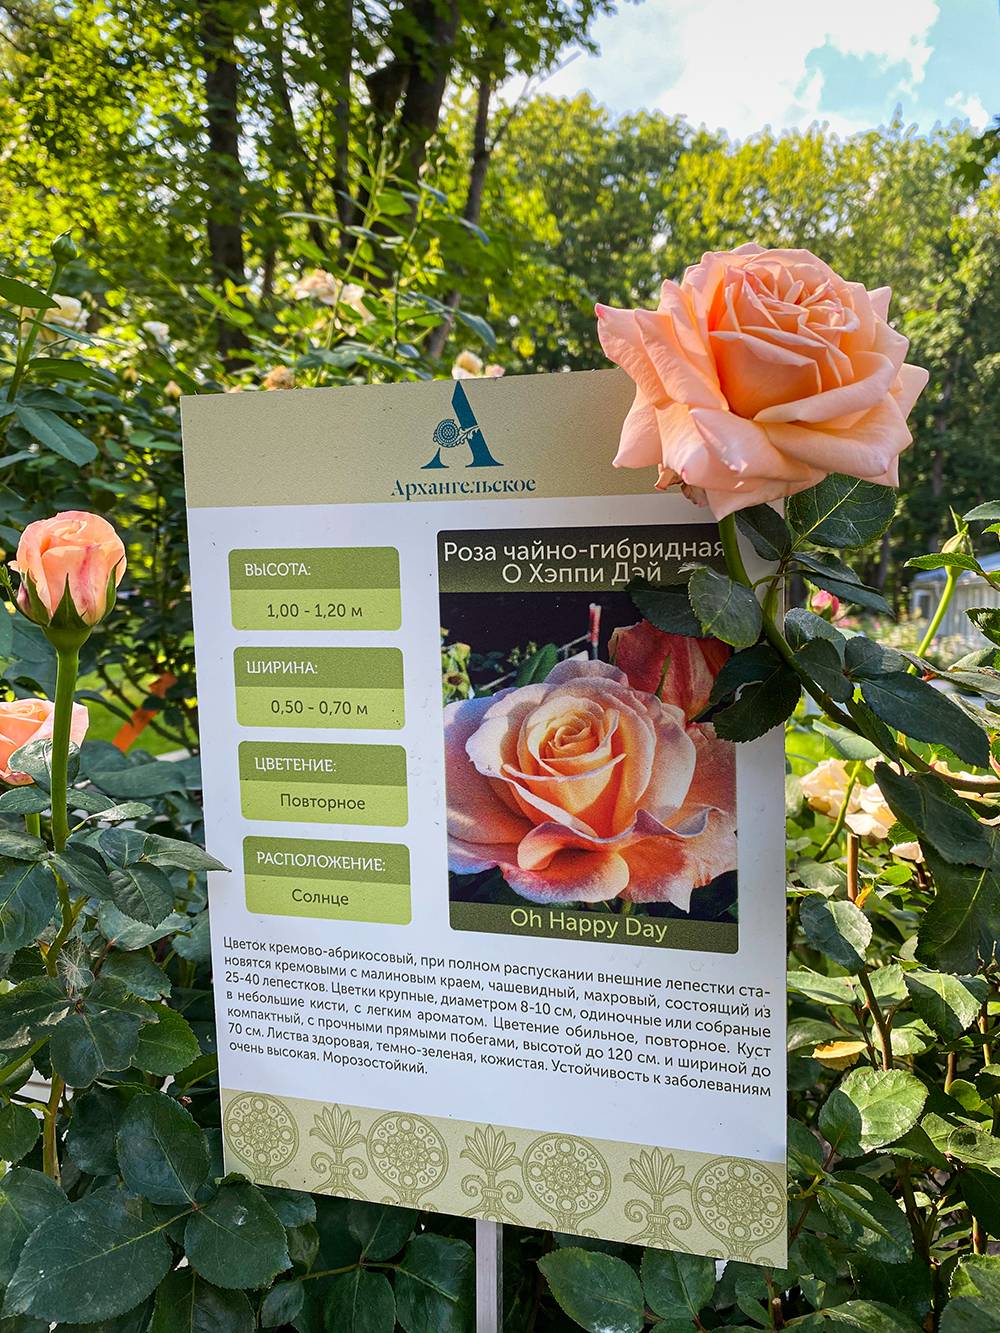 В августе в парке проходил «Фестиваль роз и&nbsp;ботанических затей». Разнообразие роз поразило